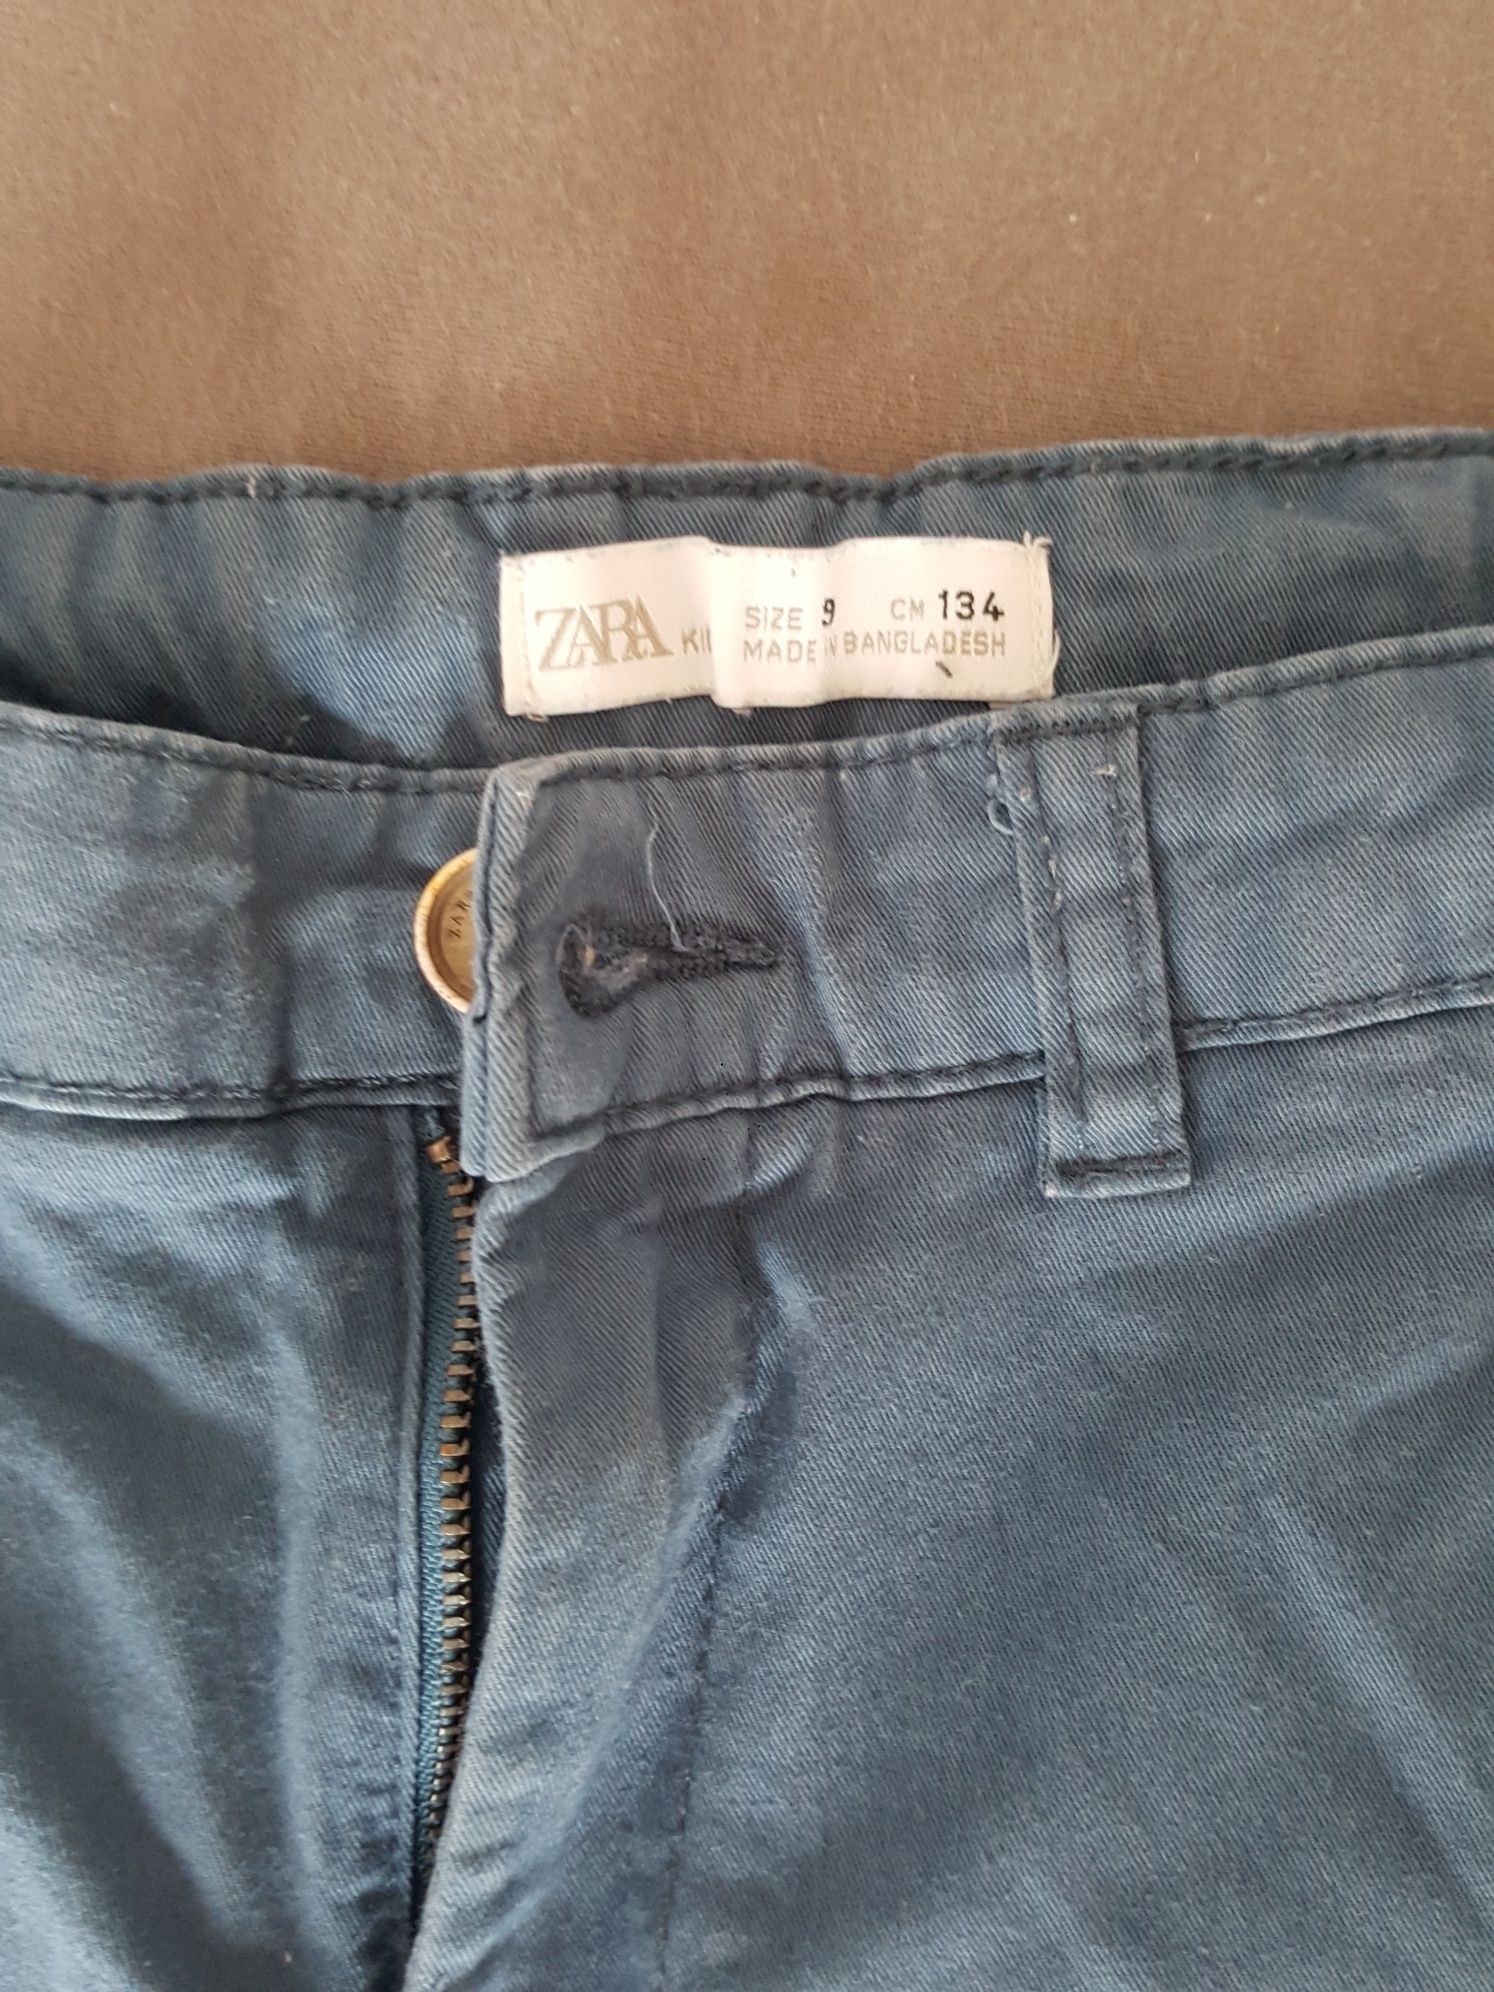 Spodnie chłopięce chinosy Zara rozmiar 134